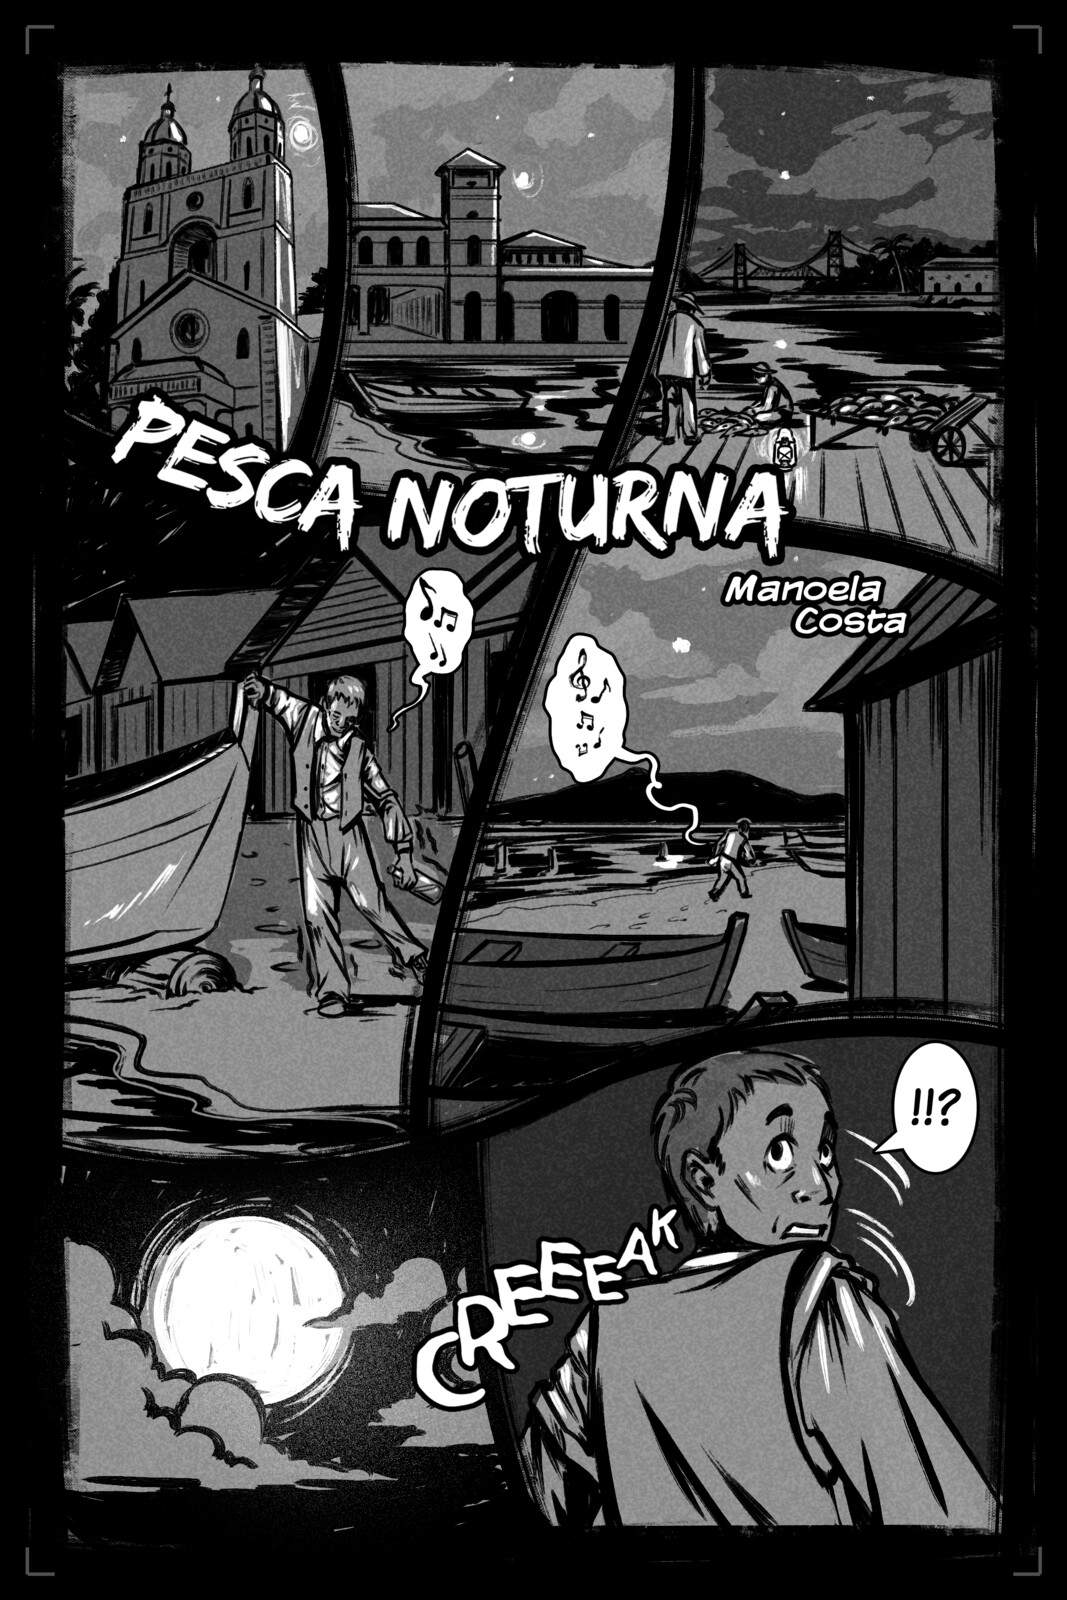 Night fishing - Short comic story